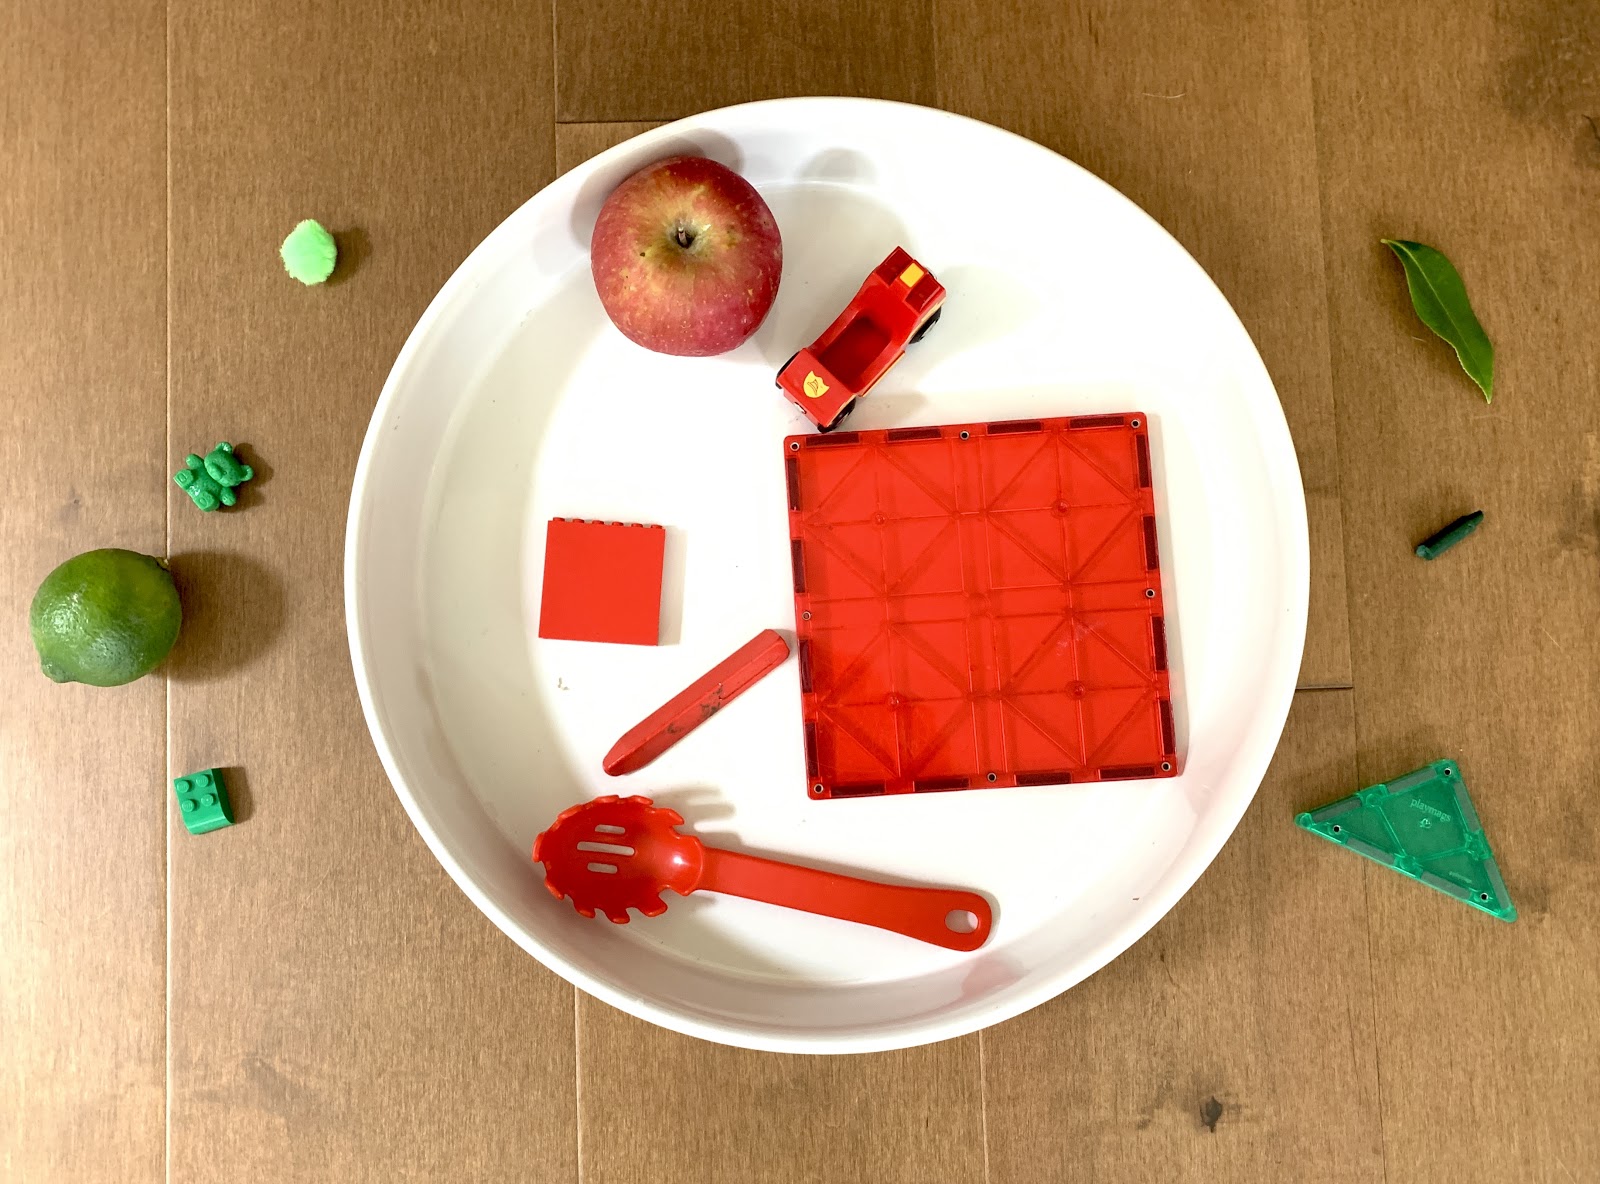 Un plato blanco con un número de objetos rojos en él; hay objetos verdes fuera del plato.